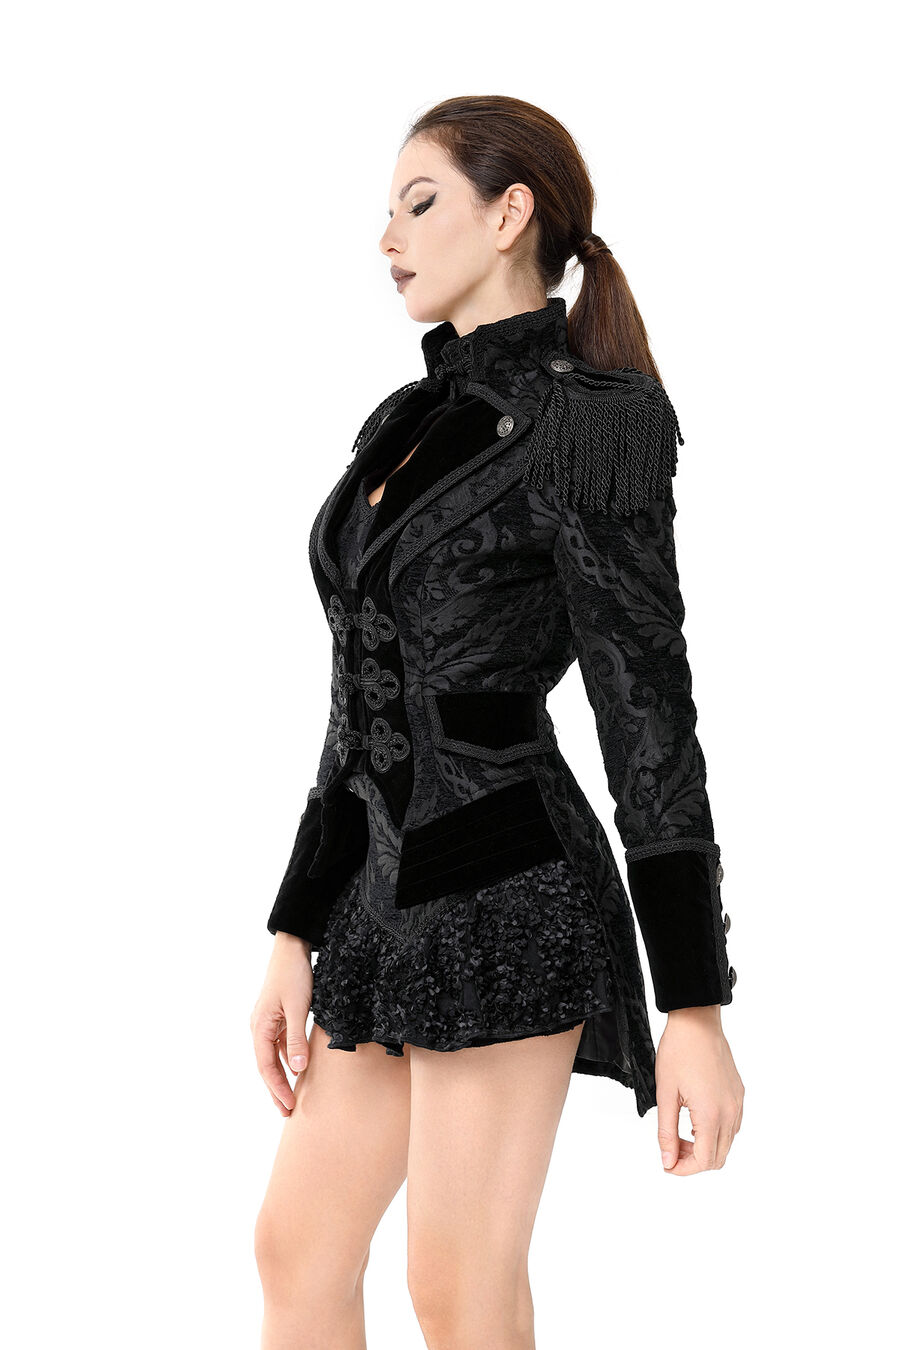 photo n°3 : veste femme  jacquard gothique queue-de-pie